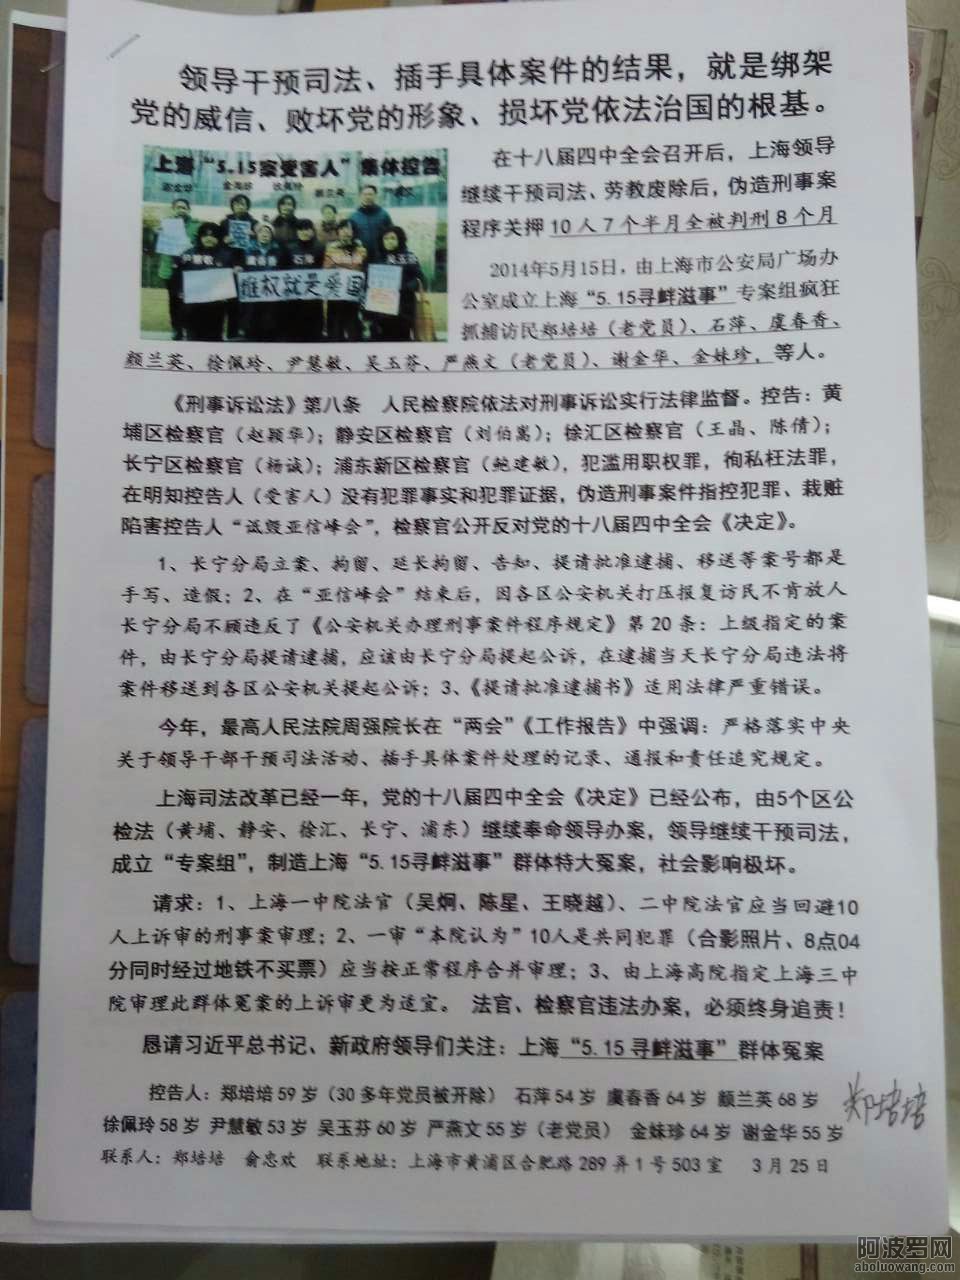 E上海二中院毁约，拒与5.15群体冤案受害者的约谈